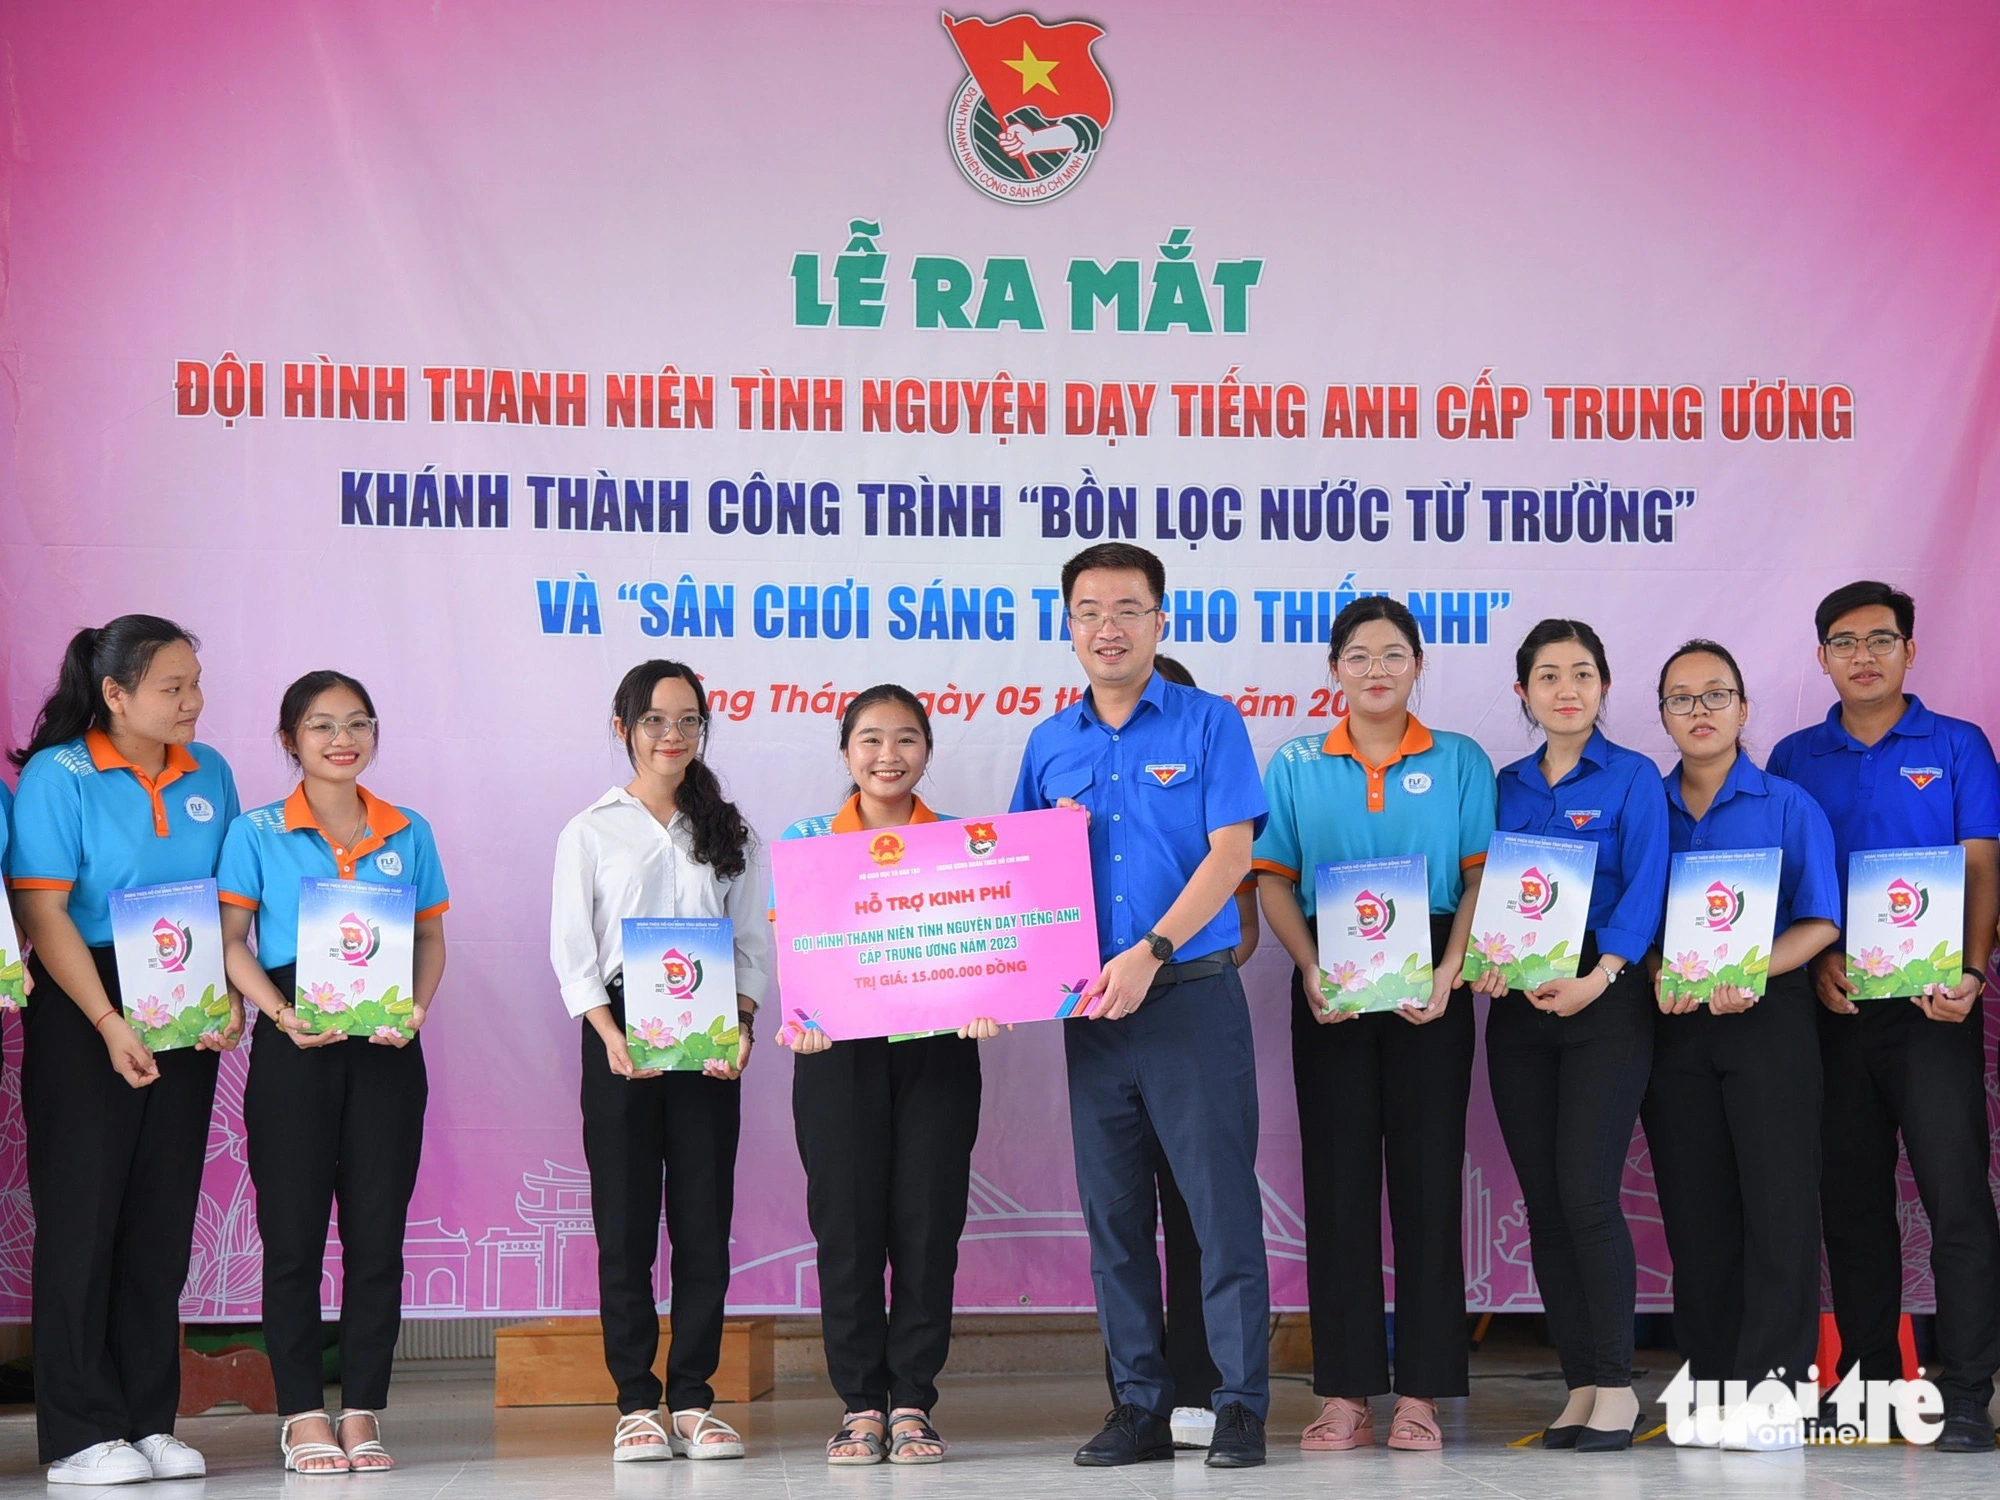 Bí thư Trung ương Đoàn Nguyễn Tường Lâm trao tặng kinh phí cho đội thanh niên tình nguyện dạy tiếng Anh miễn phí cho học sinh - Ảnh: ĐẶNG TUYẾT